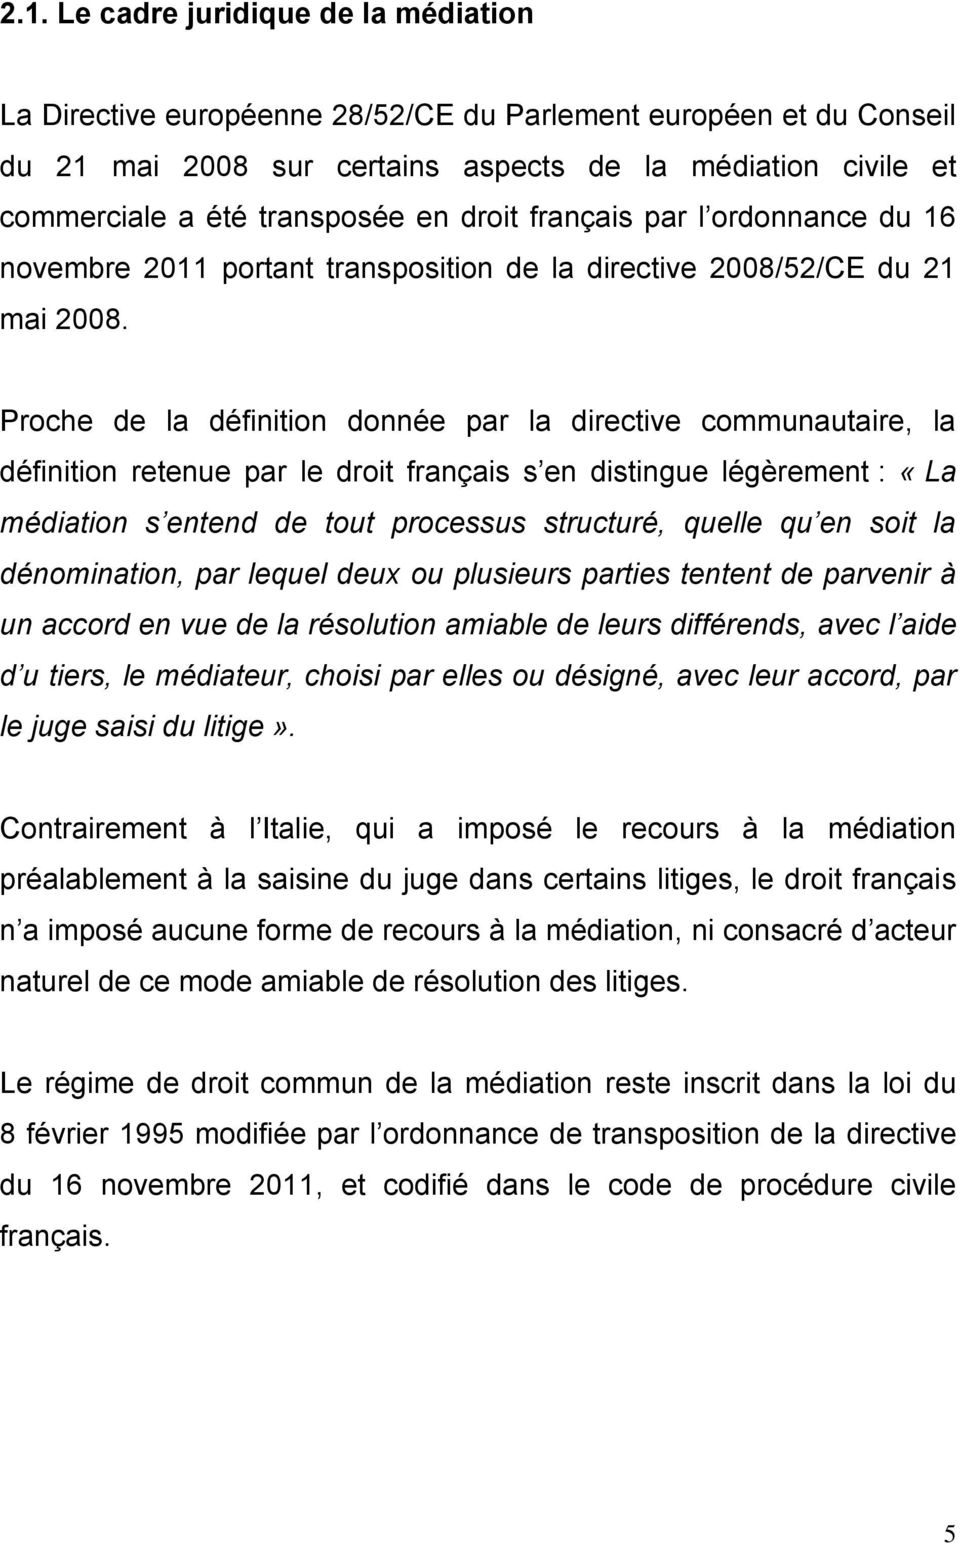 Proche de la définition donnée par la directive communautaire, la définition retenue par le droit français s en distingue légèrement : «La médiation s entend de tout processus structuré, quelle qu en